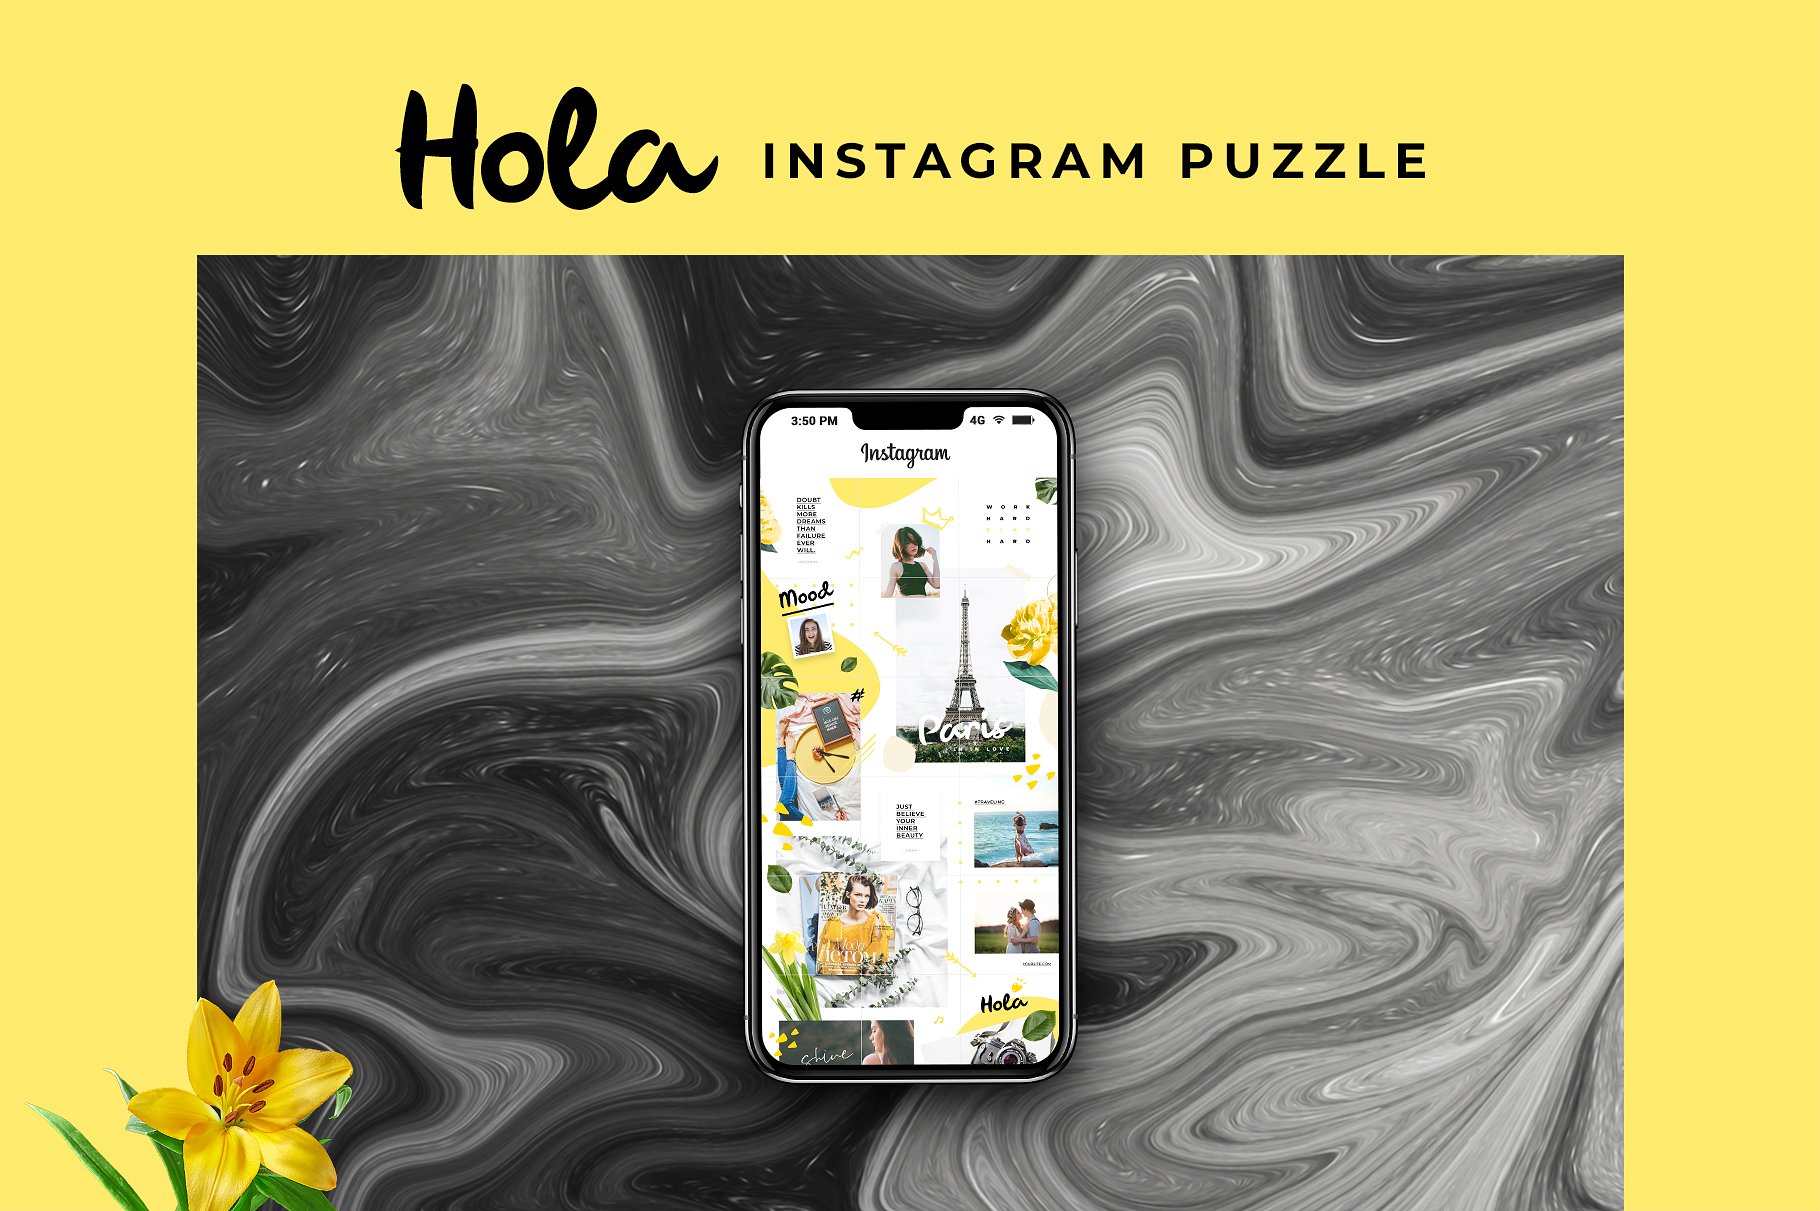 时尚极简的Instagram社交媒体模板素材库精选 Instagram Puzzle – Hola [psd]插图(2)